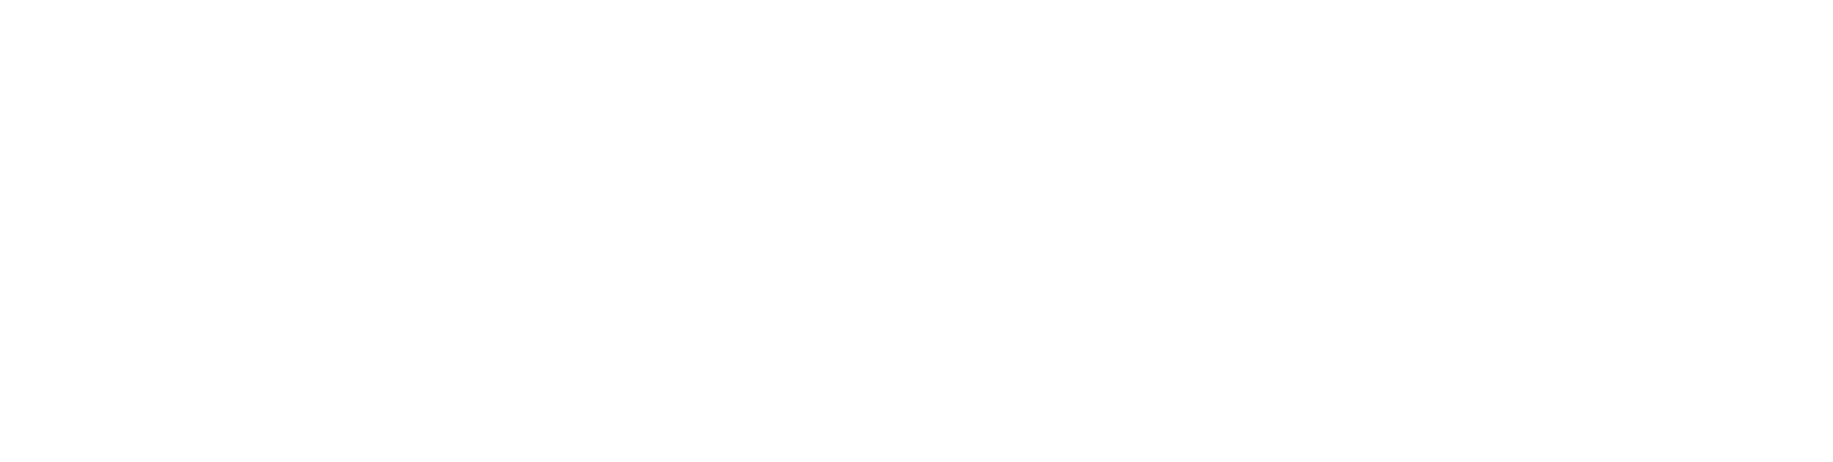 Belle-Femme-new-logo